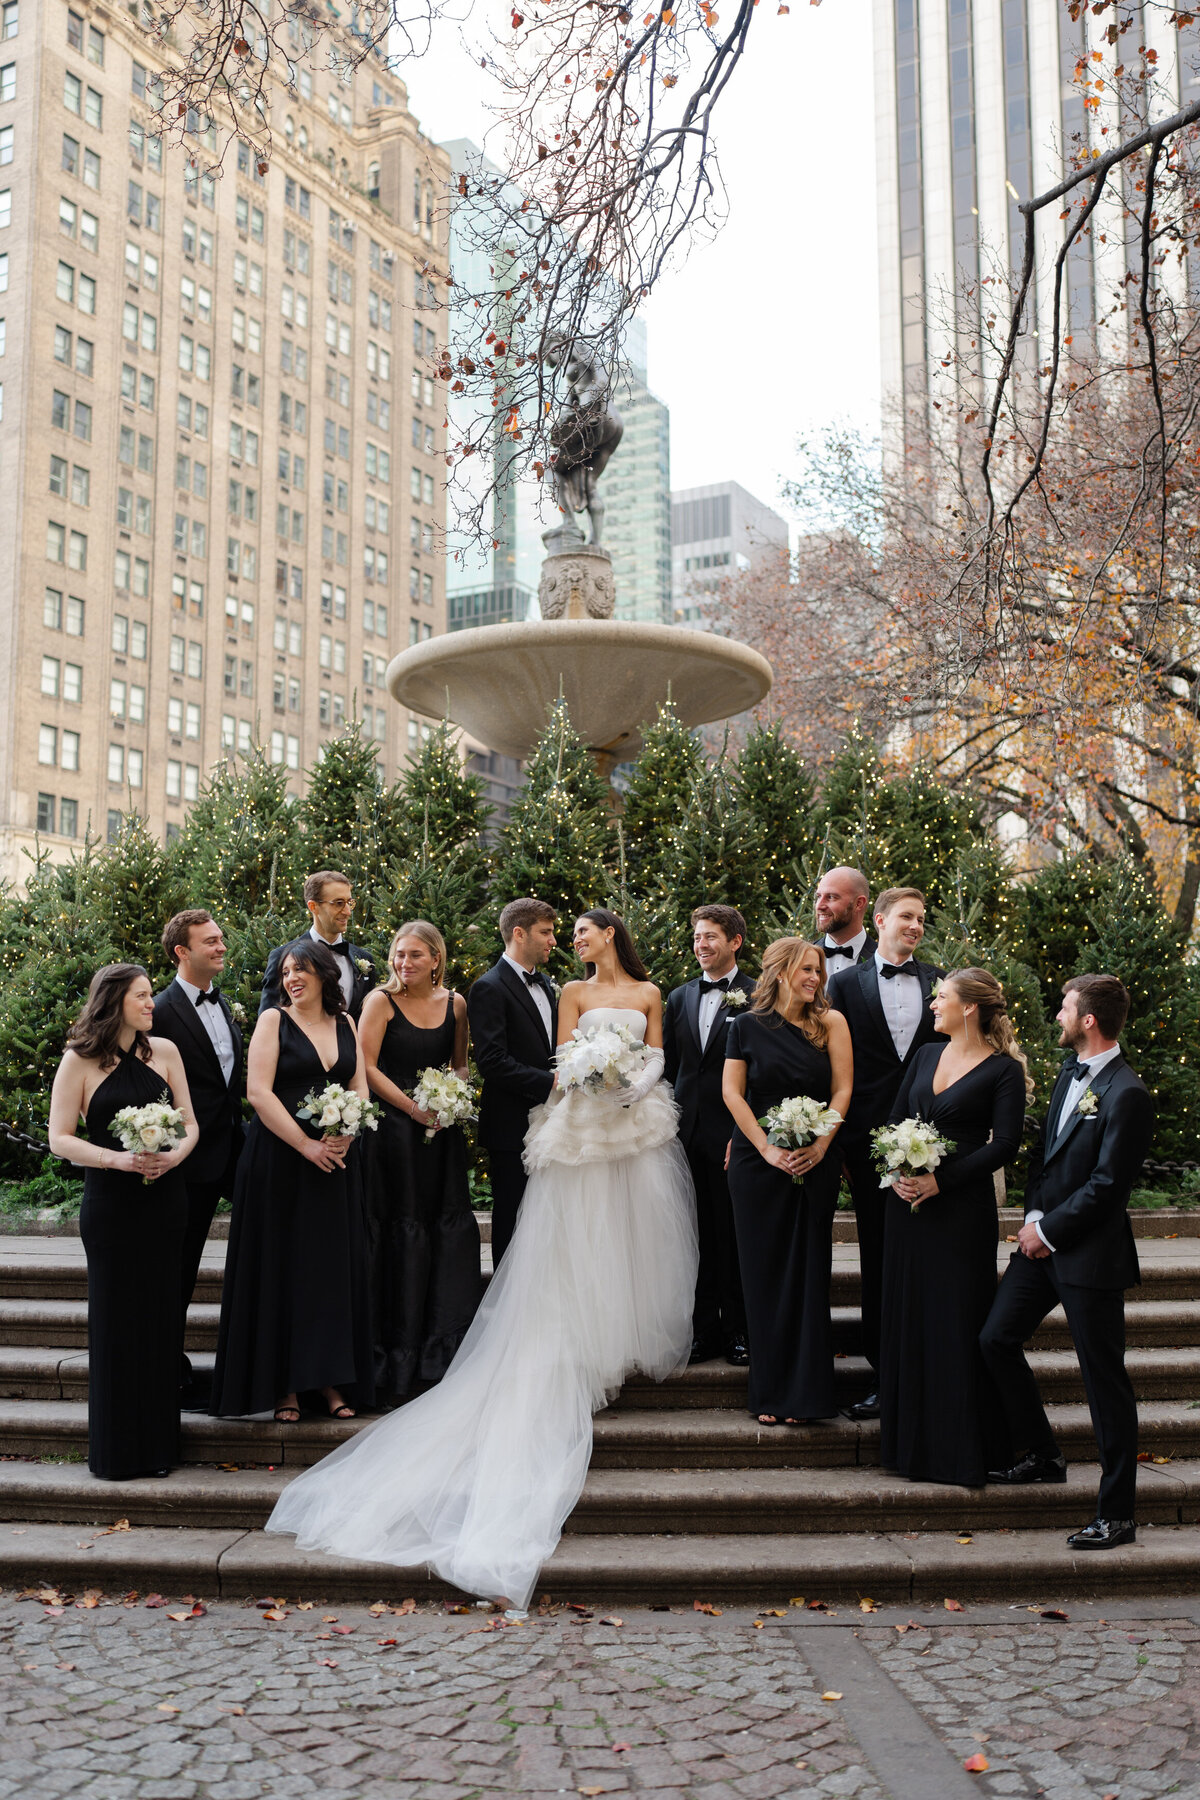 theplazahotel-plazawedding-fancywedding-newyorkwedding-felixfeyginphotography-018